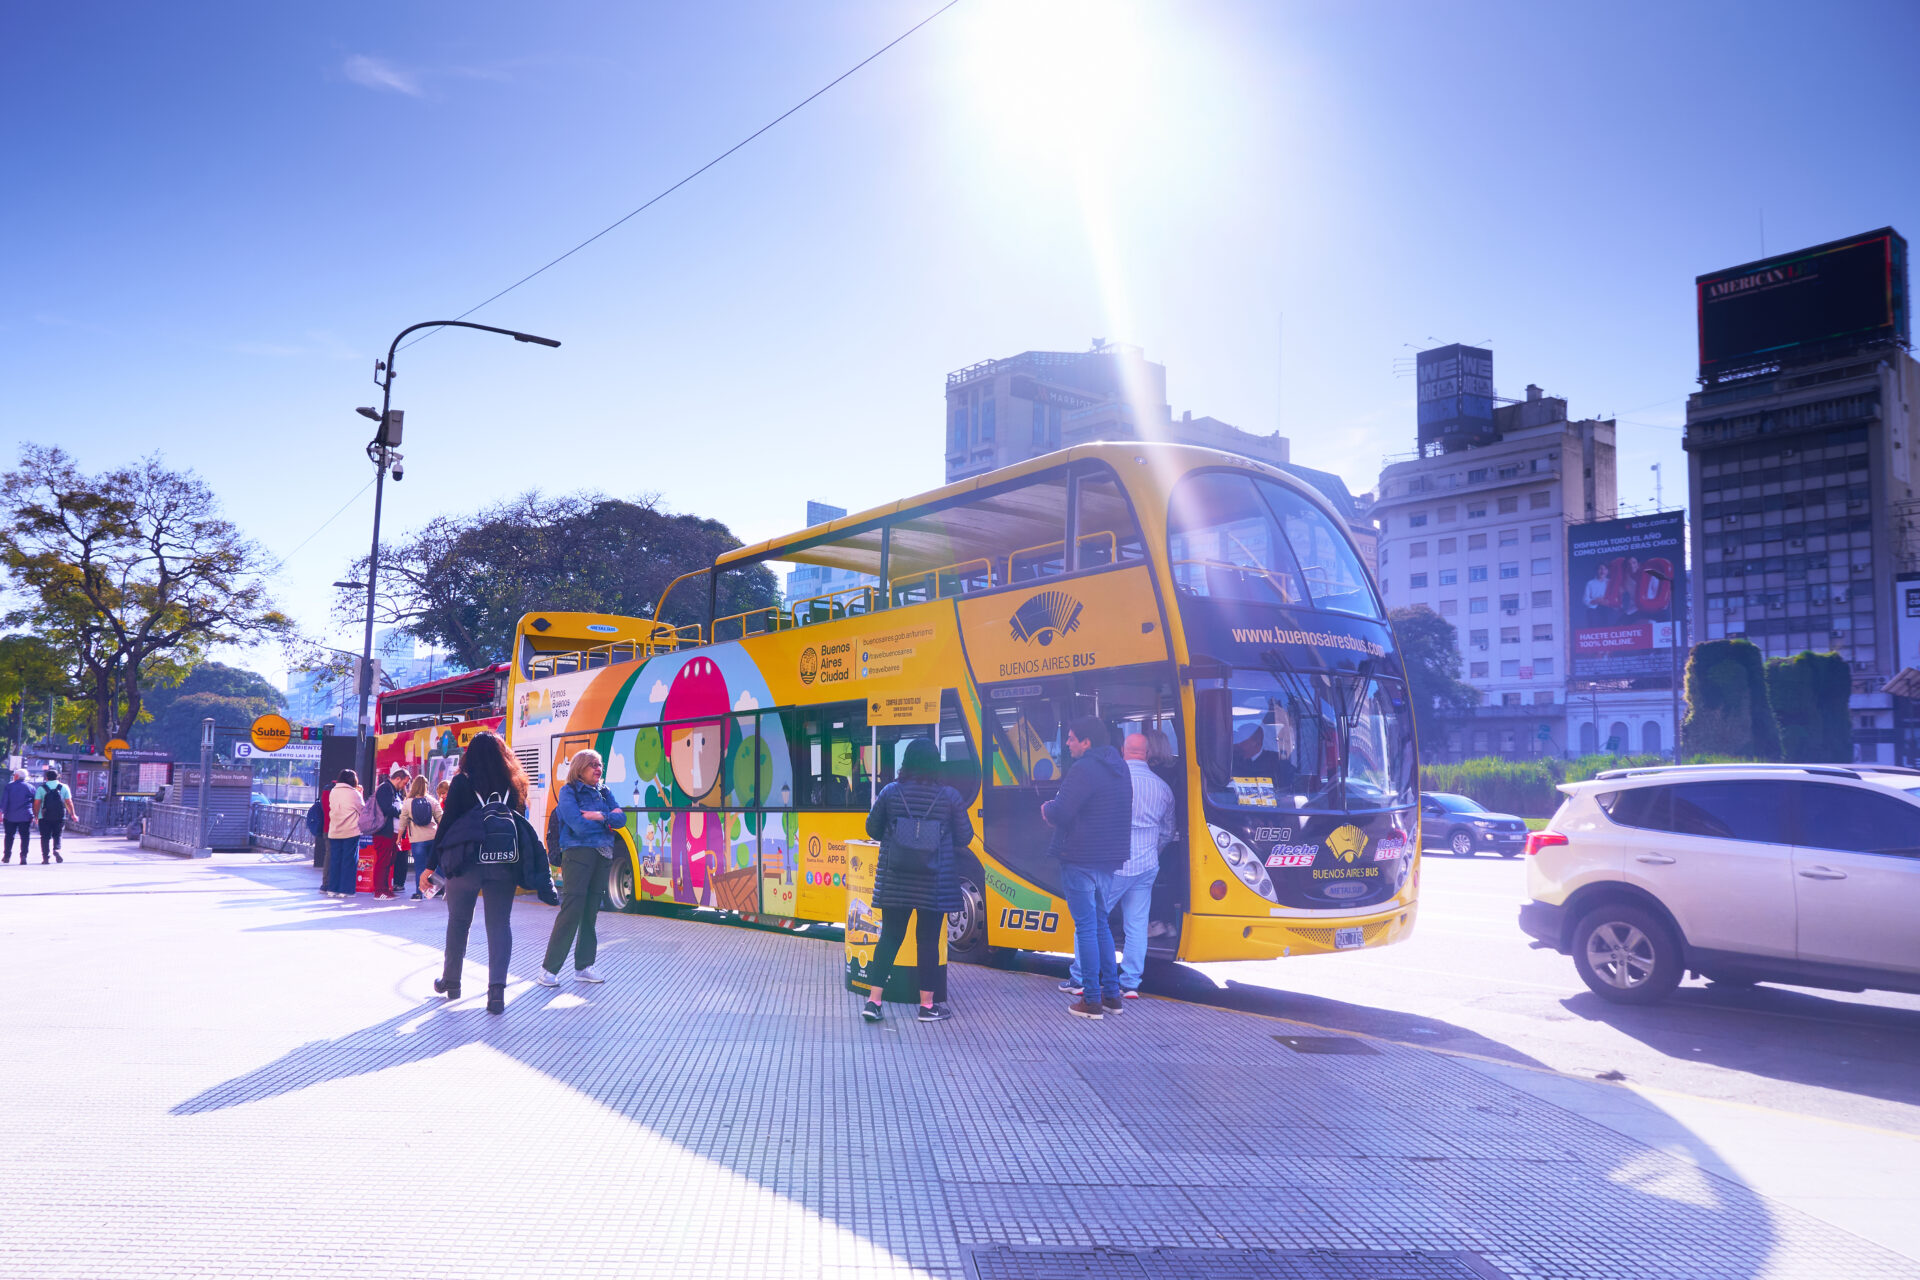 ブエノスアイレスの観光地を安全に周る方法 / 黄色のバスを予約